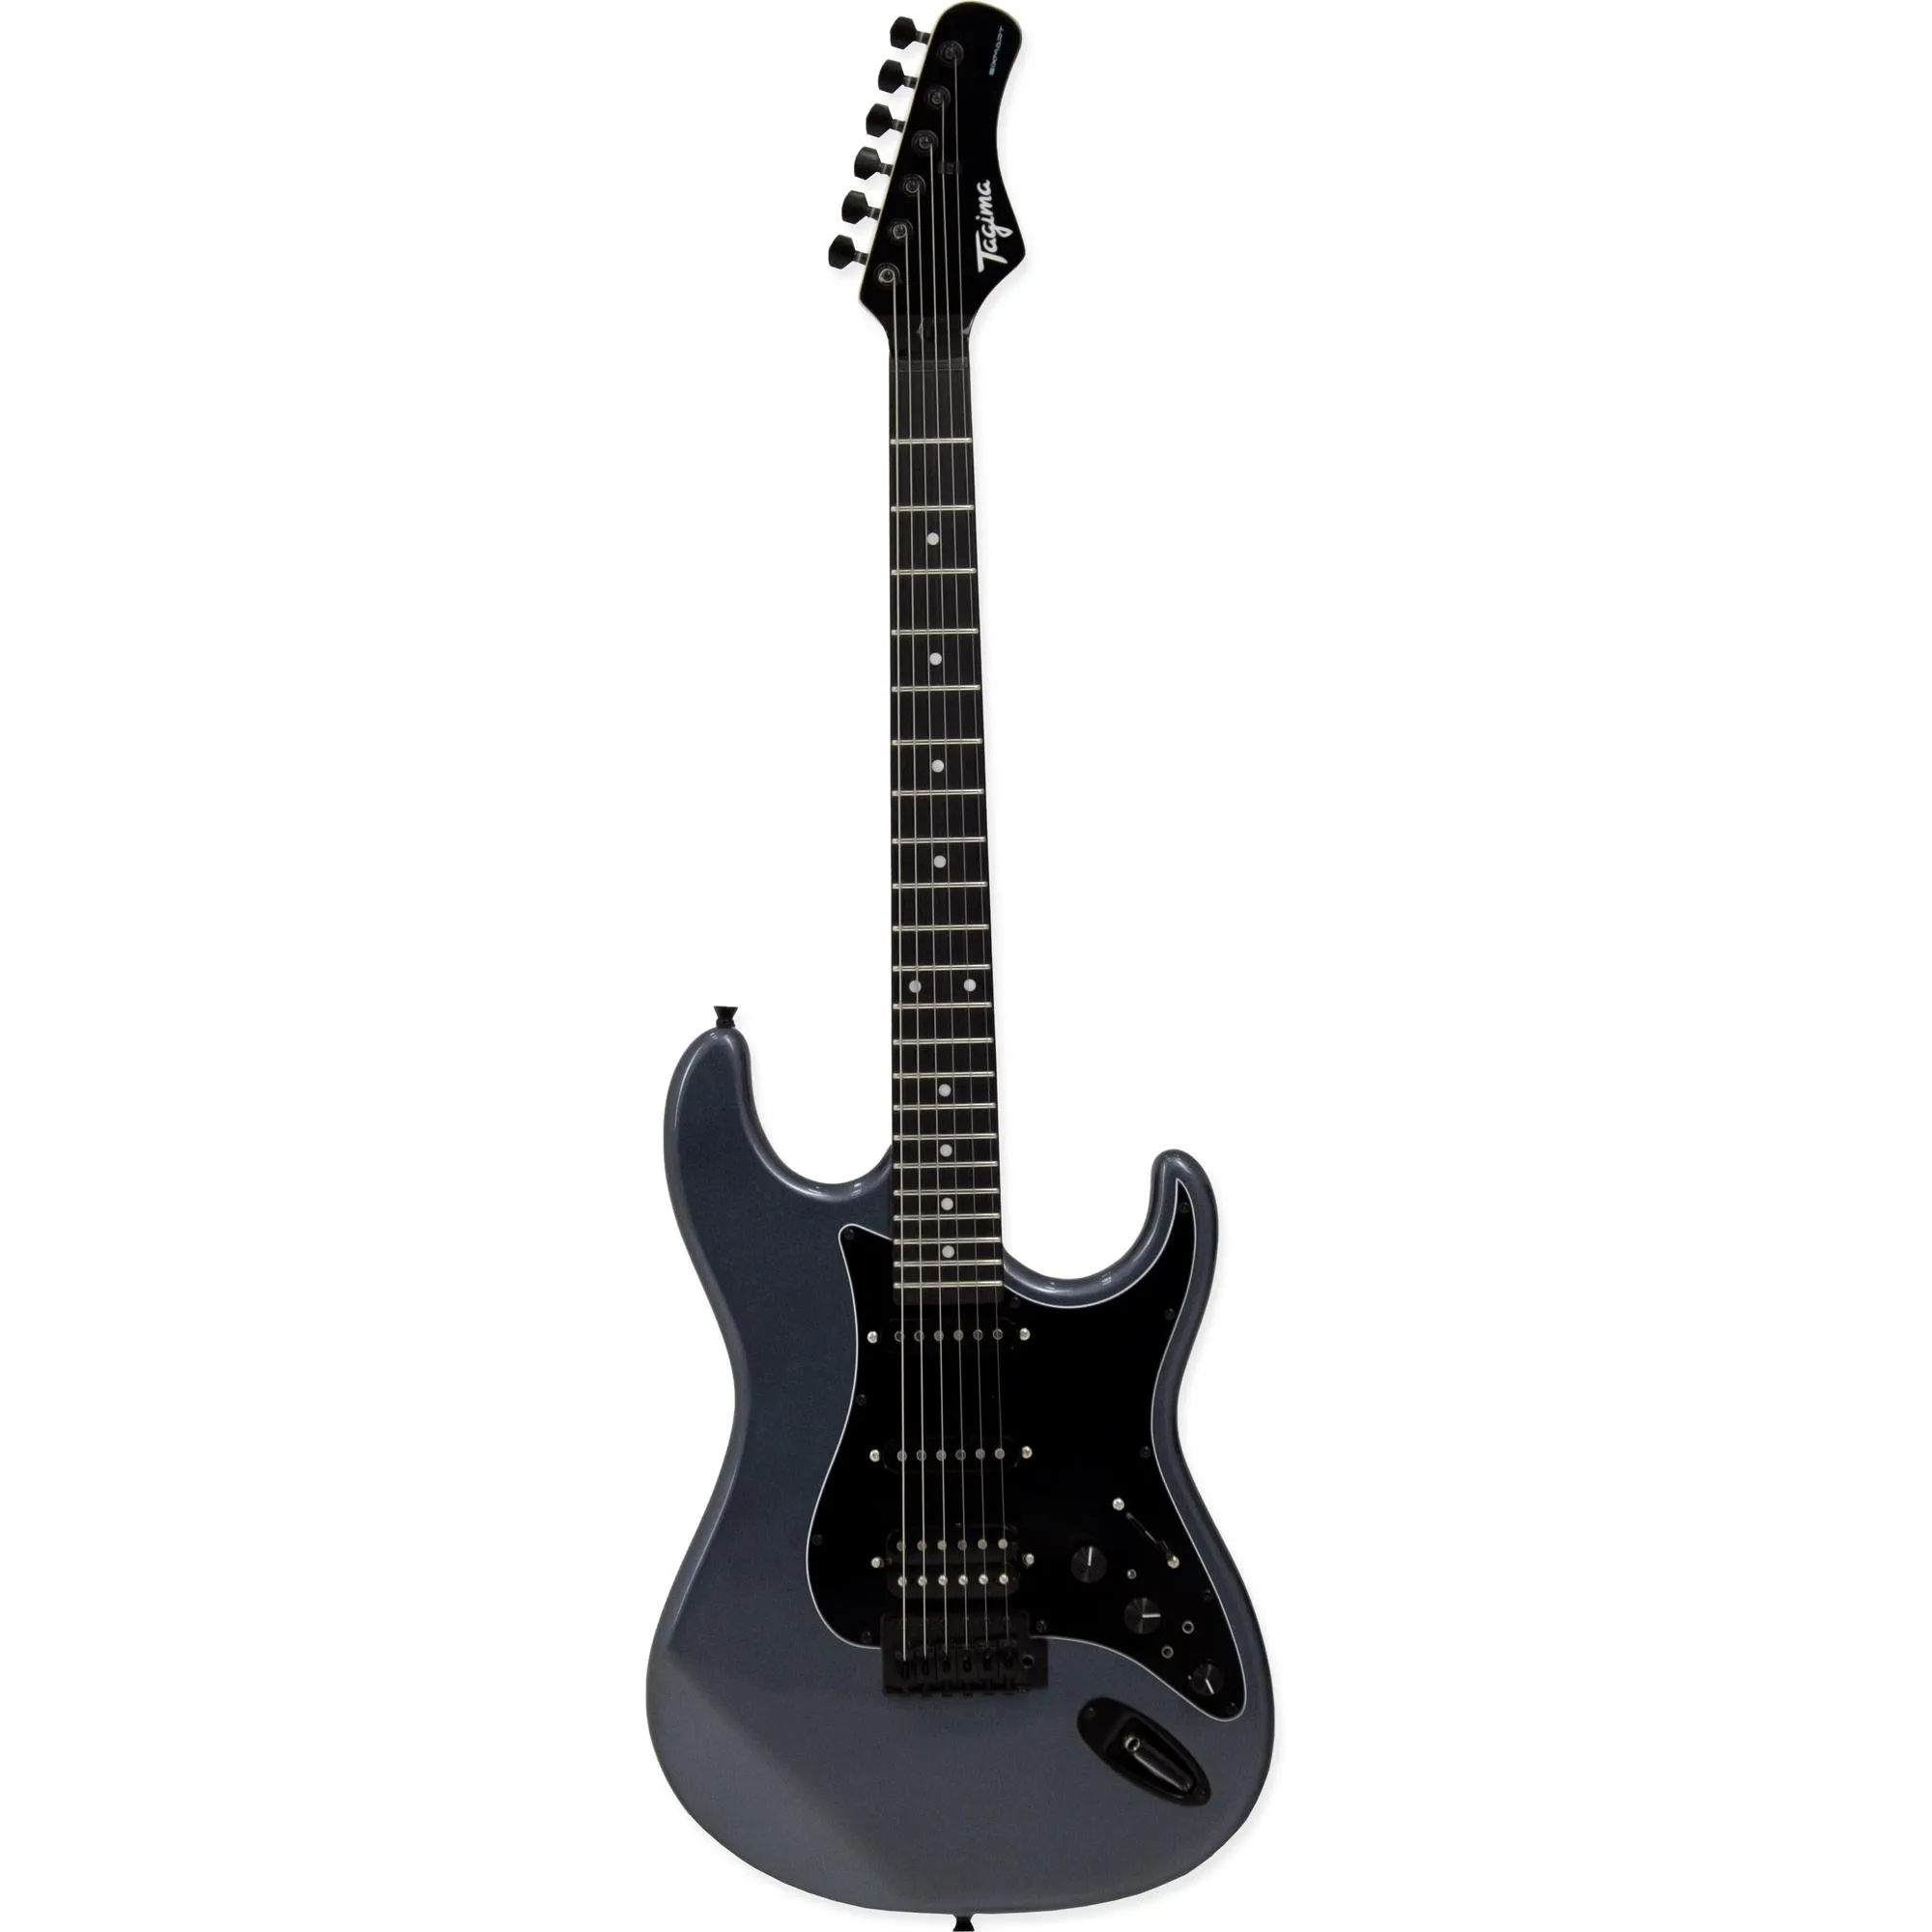 Guitarra Tagima Sixmart Metallic Deep Silver por 1.499,99 à vista no boleto/pix ou parcele em até 12x sem juros. Compre na loja Mundomax!